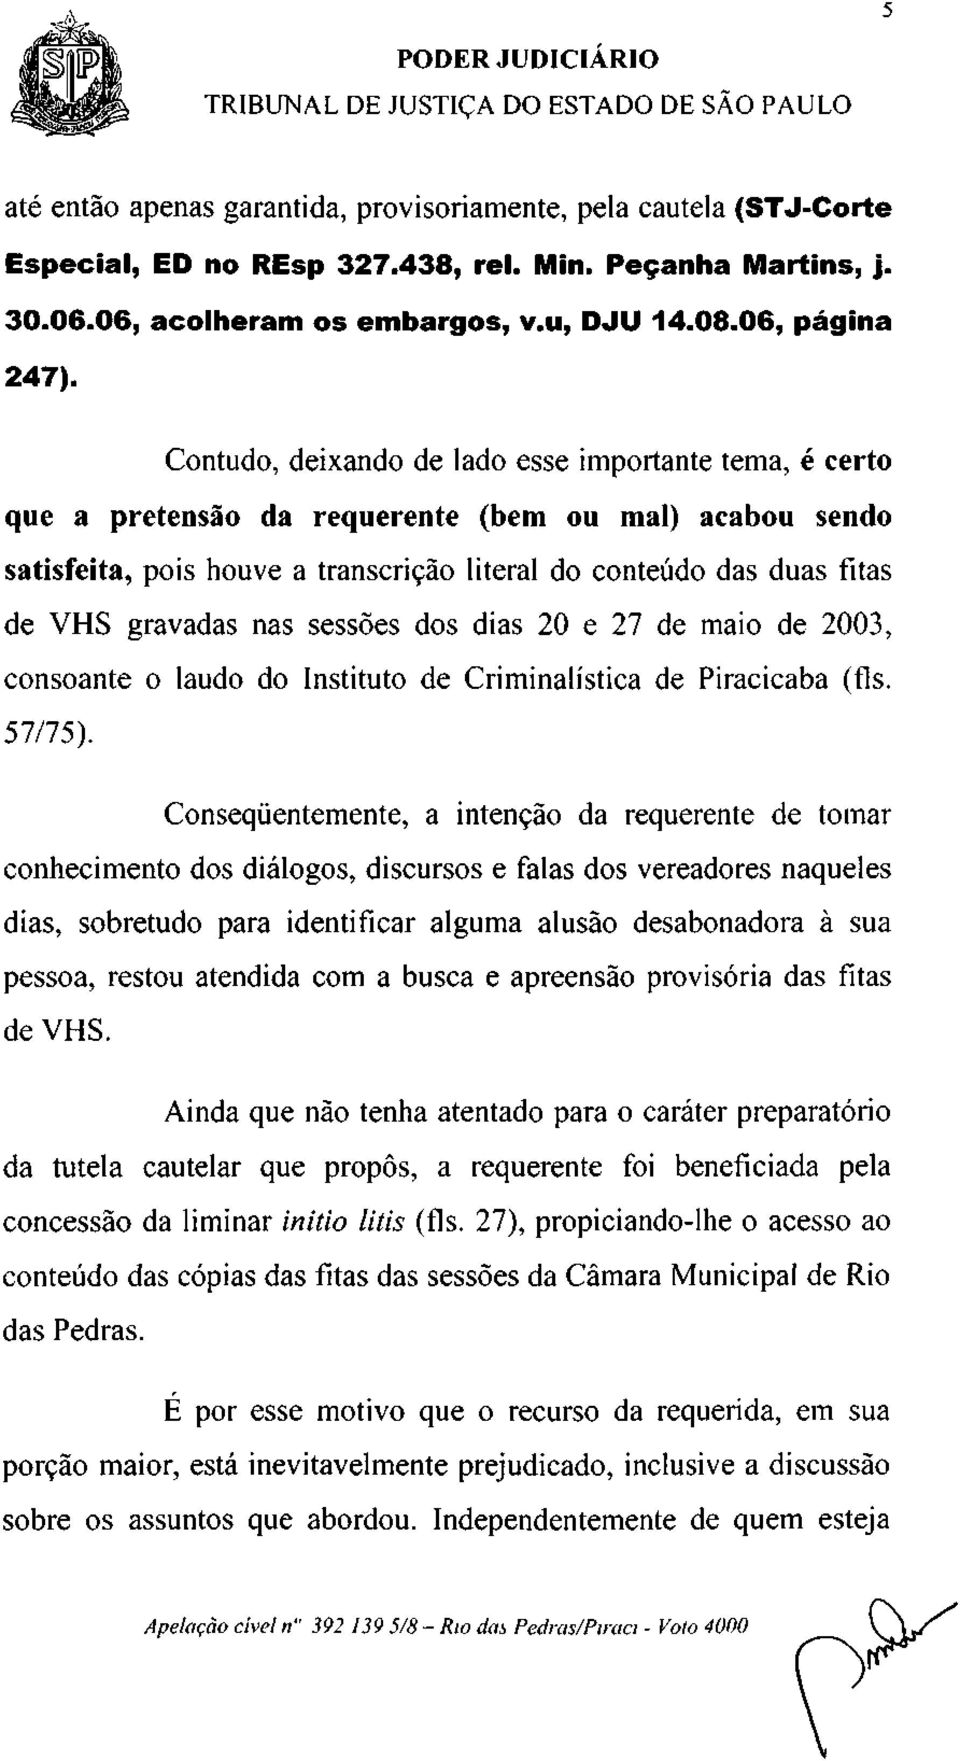 nas sessões dos dias 20 e 27 de maio de 2003, consoante o laudo do Instituto de Criminalística de Piracicaba (fls. 57/75).